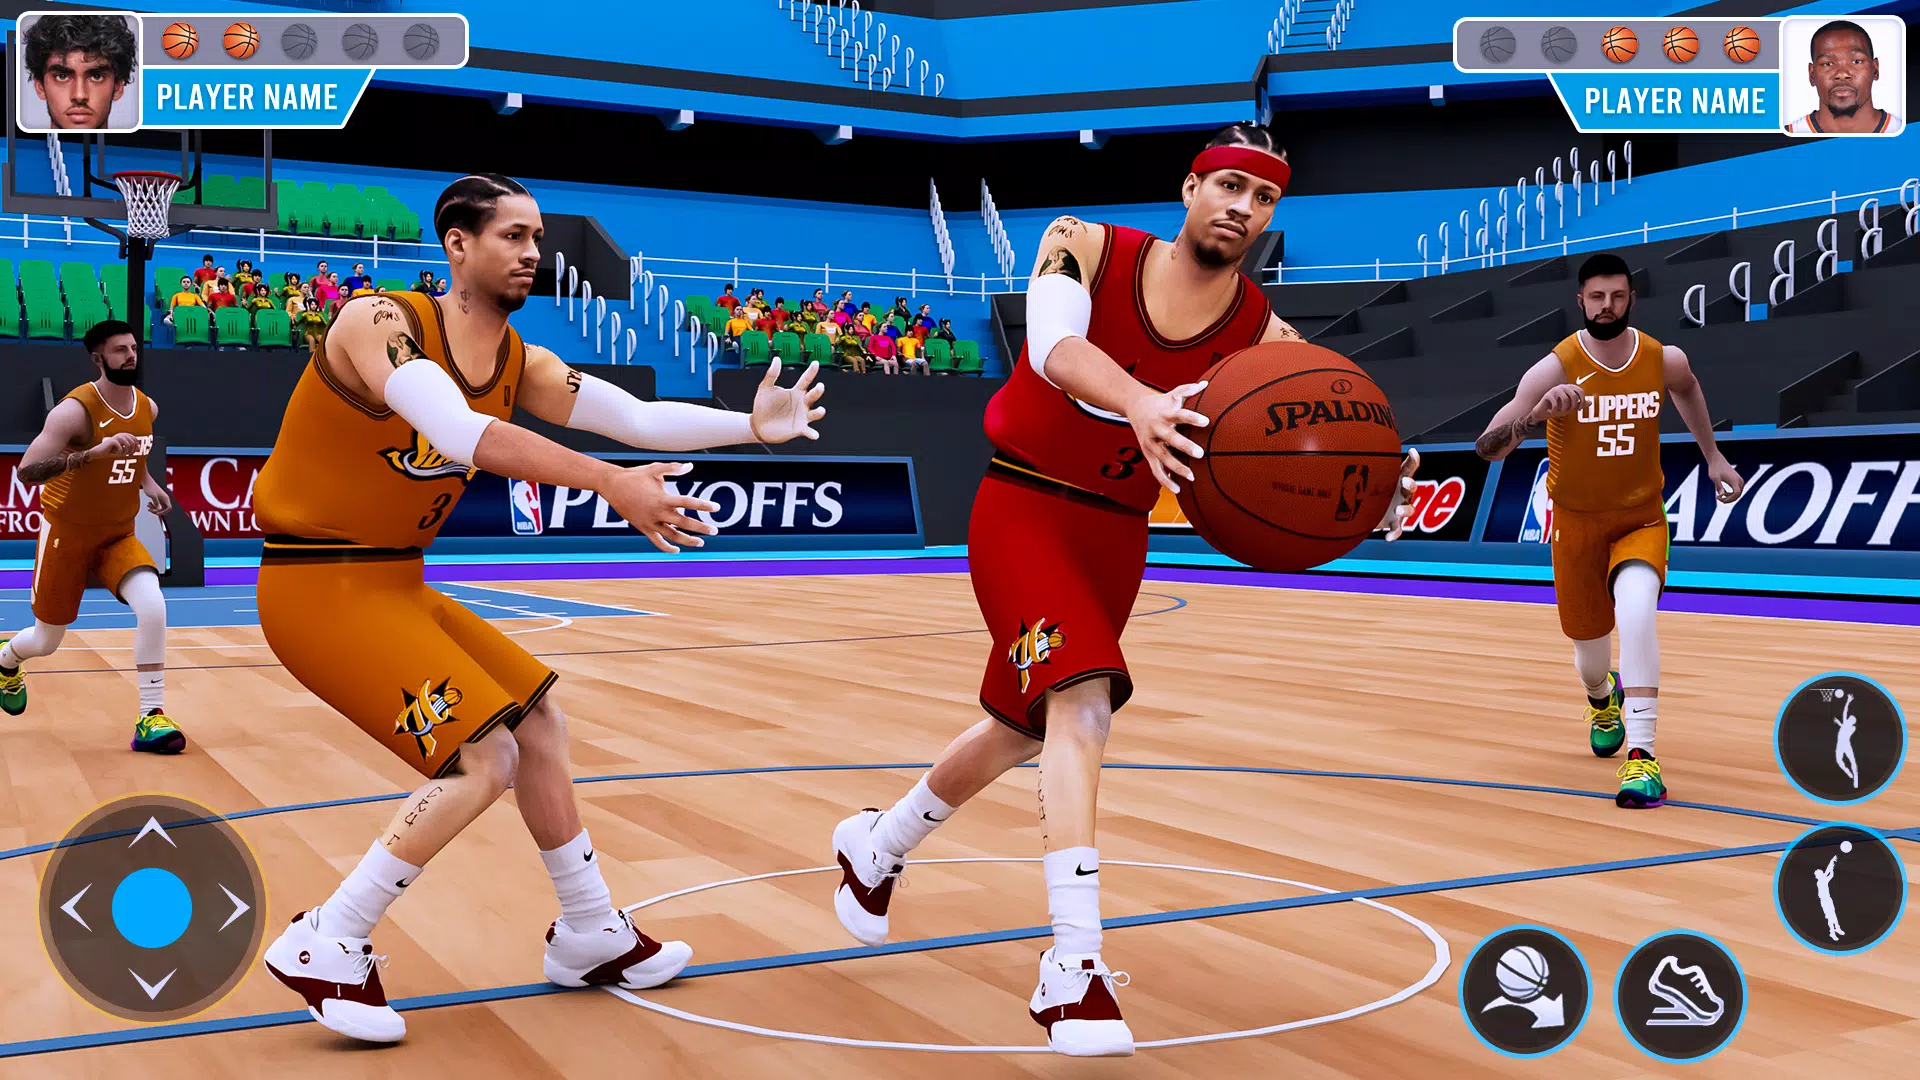 Faça o download do Jogos de basquete para Android - Os melhores